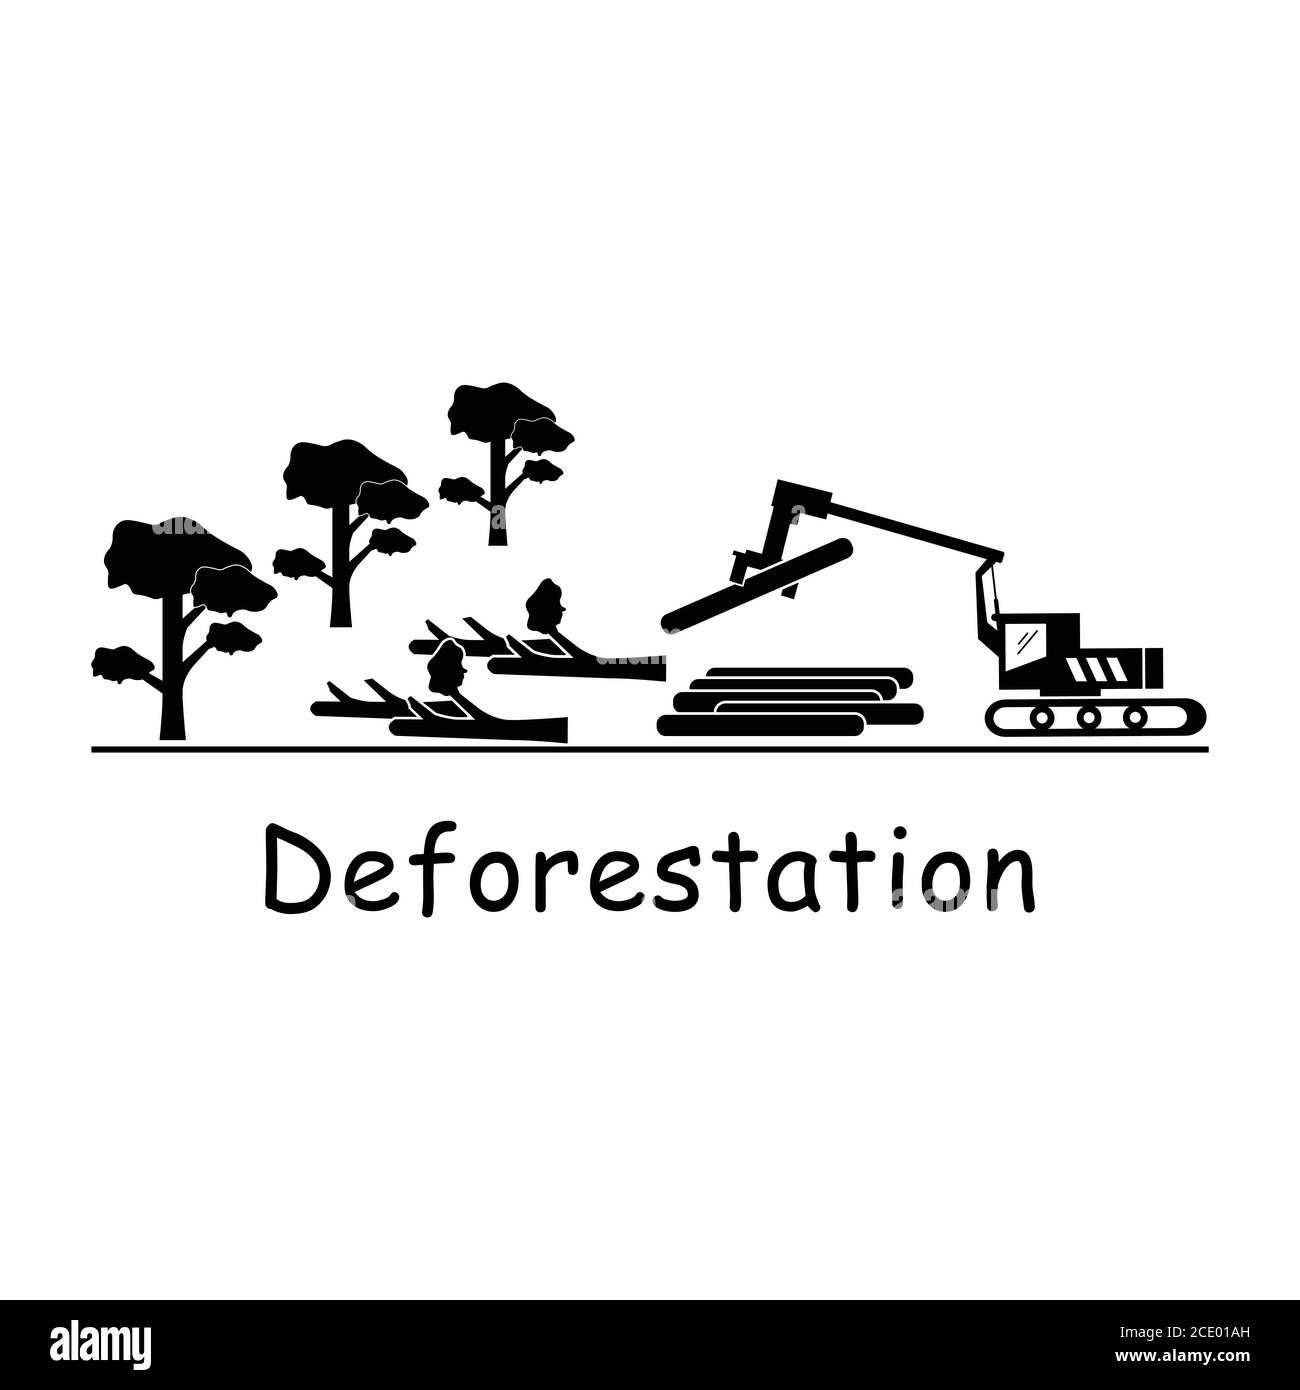 Registrazione deforestazione. Pittogramma raffigurante logger logger macchina di taglio giù tress distruggendo ambiente deforestation logging. EPS bianco e nero Illustrazione Vettoriale